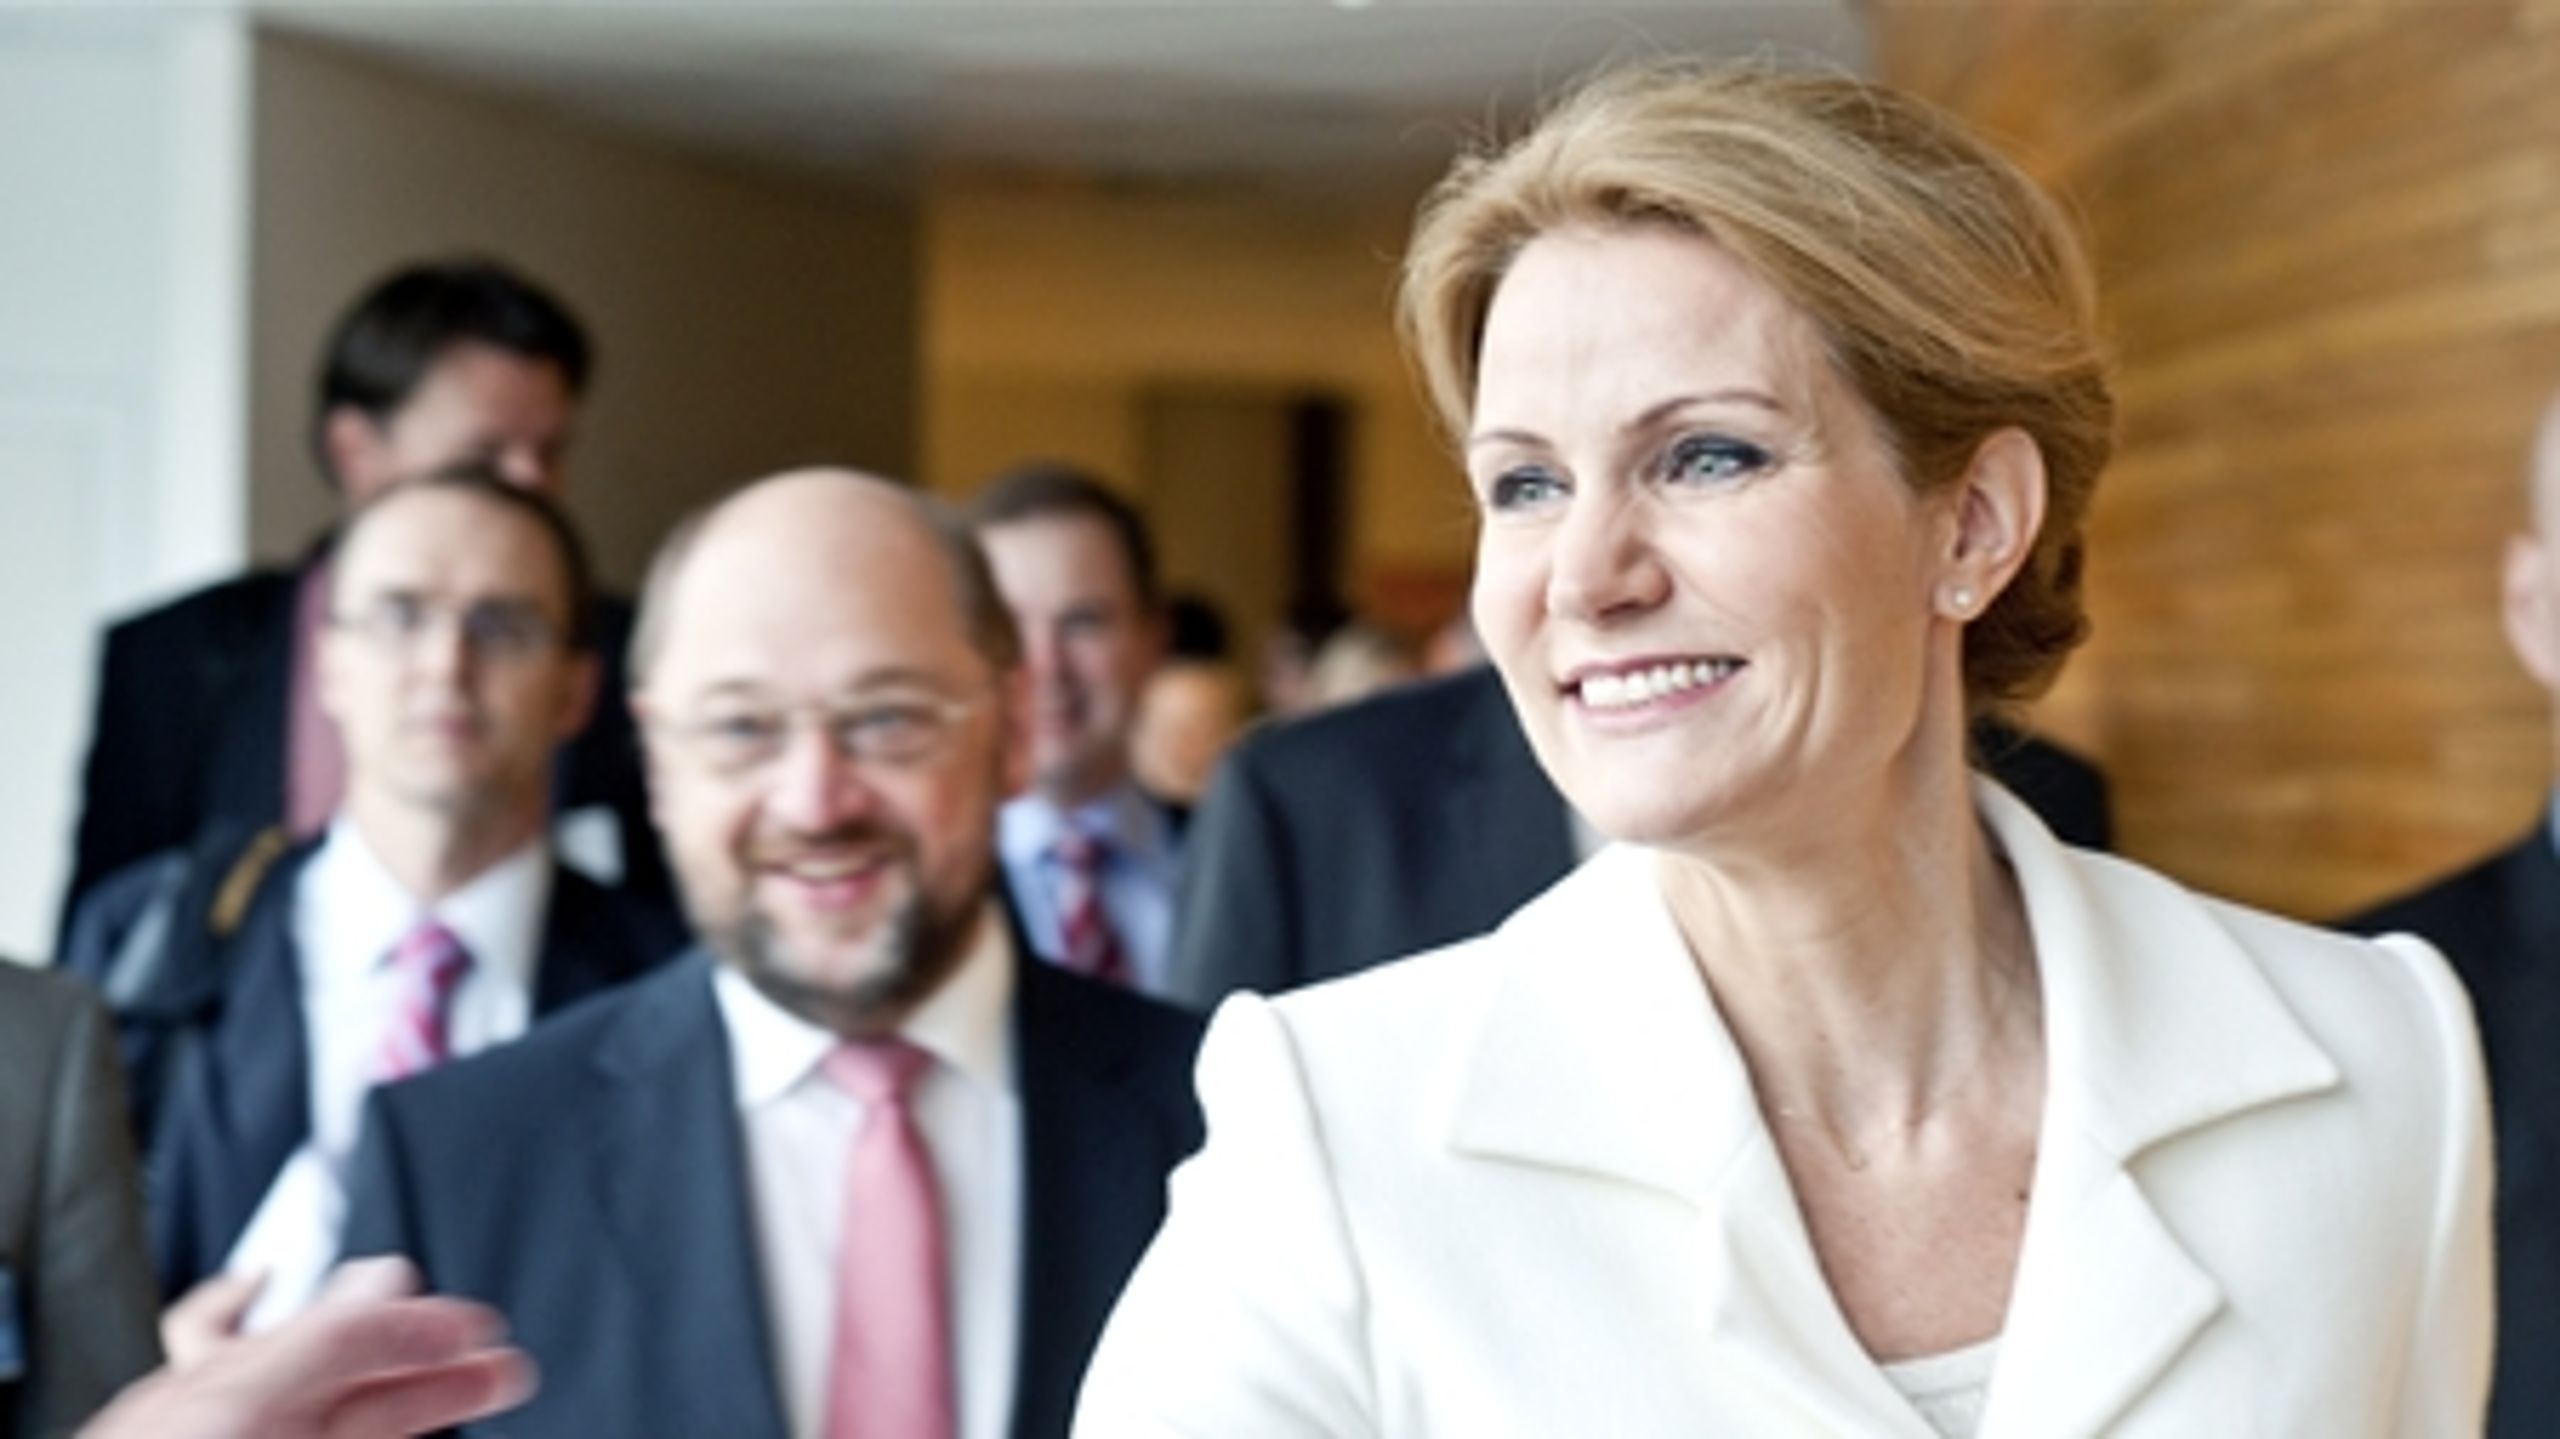 S-vælgerne støtter Helle Thorning-Schmidt som formand, viser ny måling.